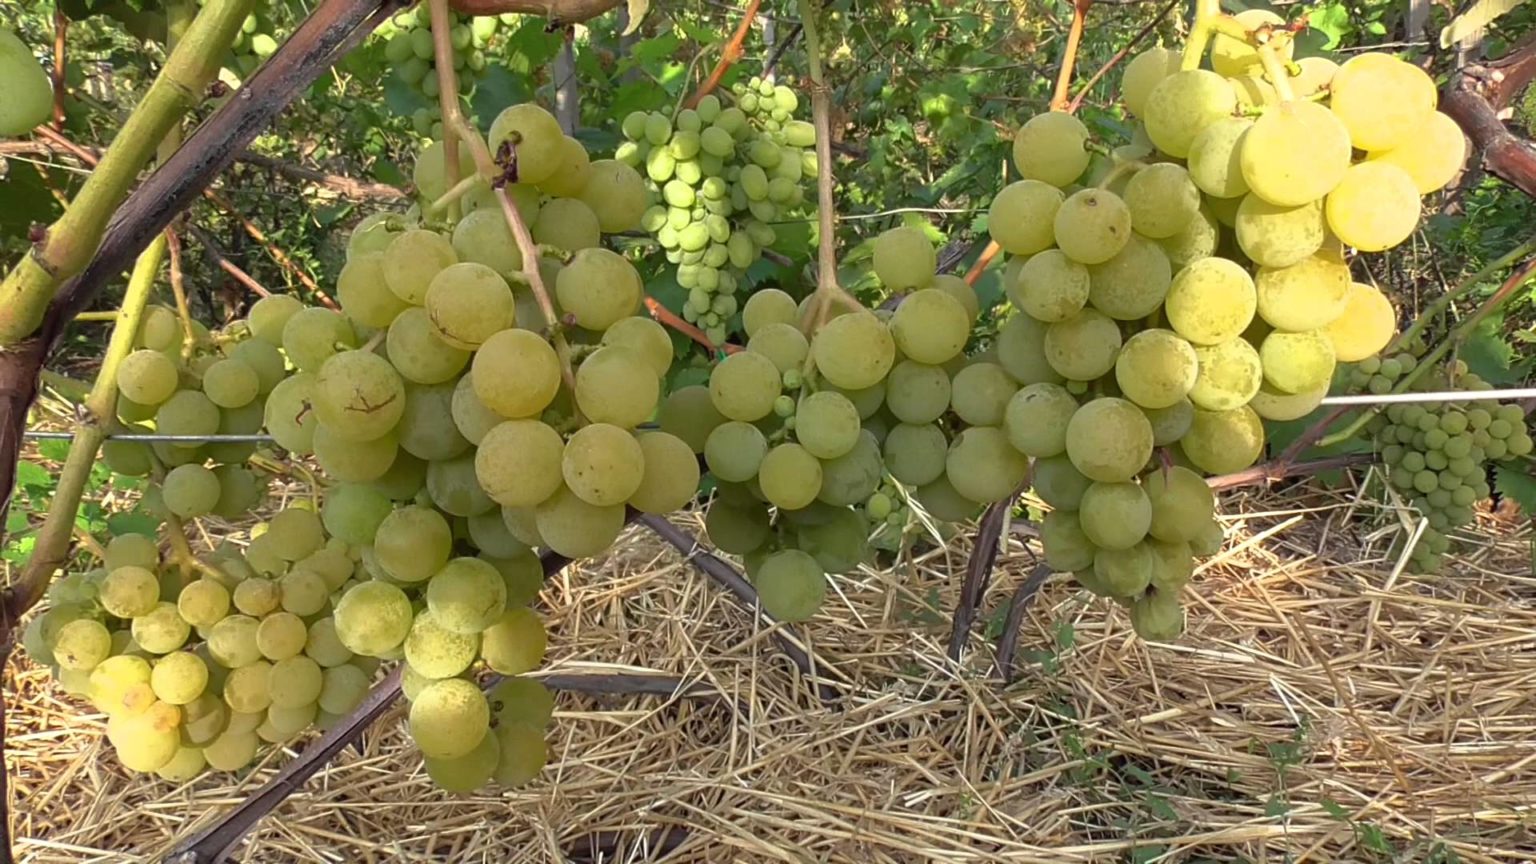 Виноград софия: описание сорта, посадка и уход, способы размножения, сбор урожая